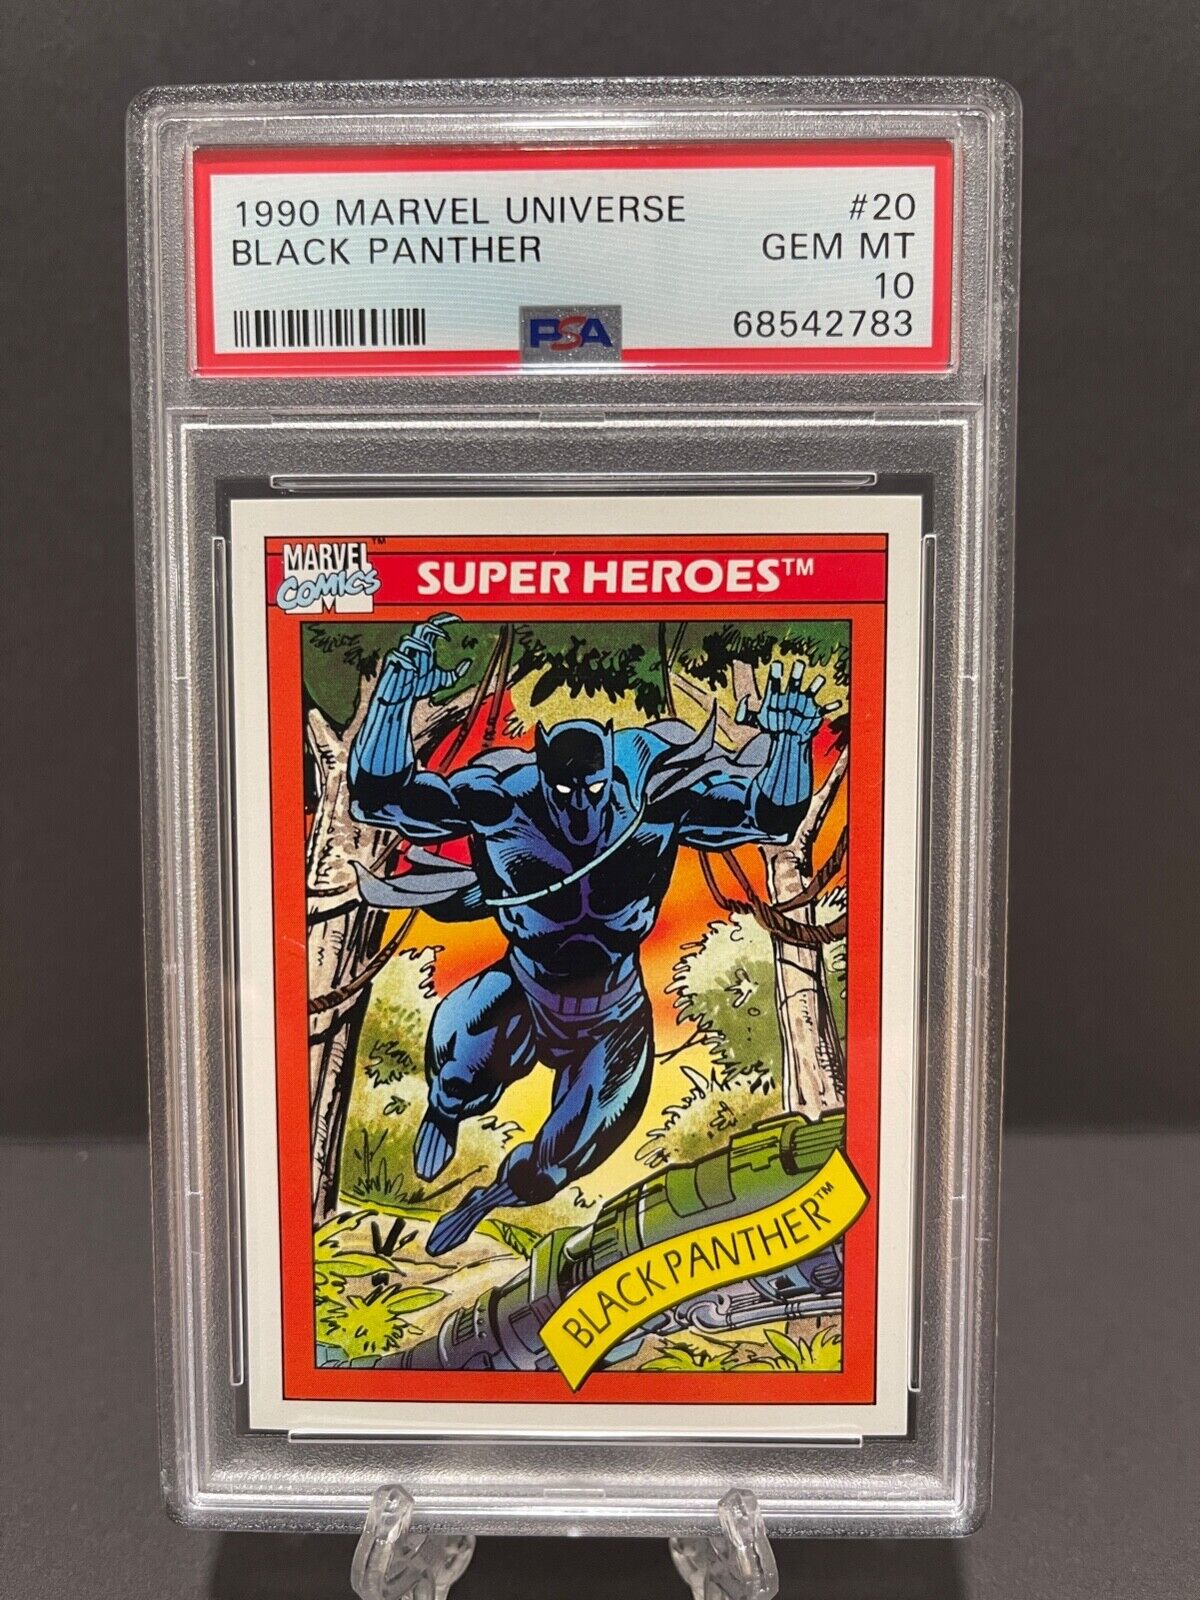 Black Panther 1990 Marvel Universe PSA 10 GEM MINT Graded 2022 #20 SUPER HEROES